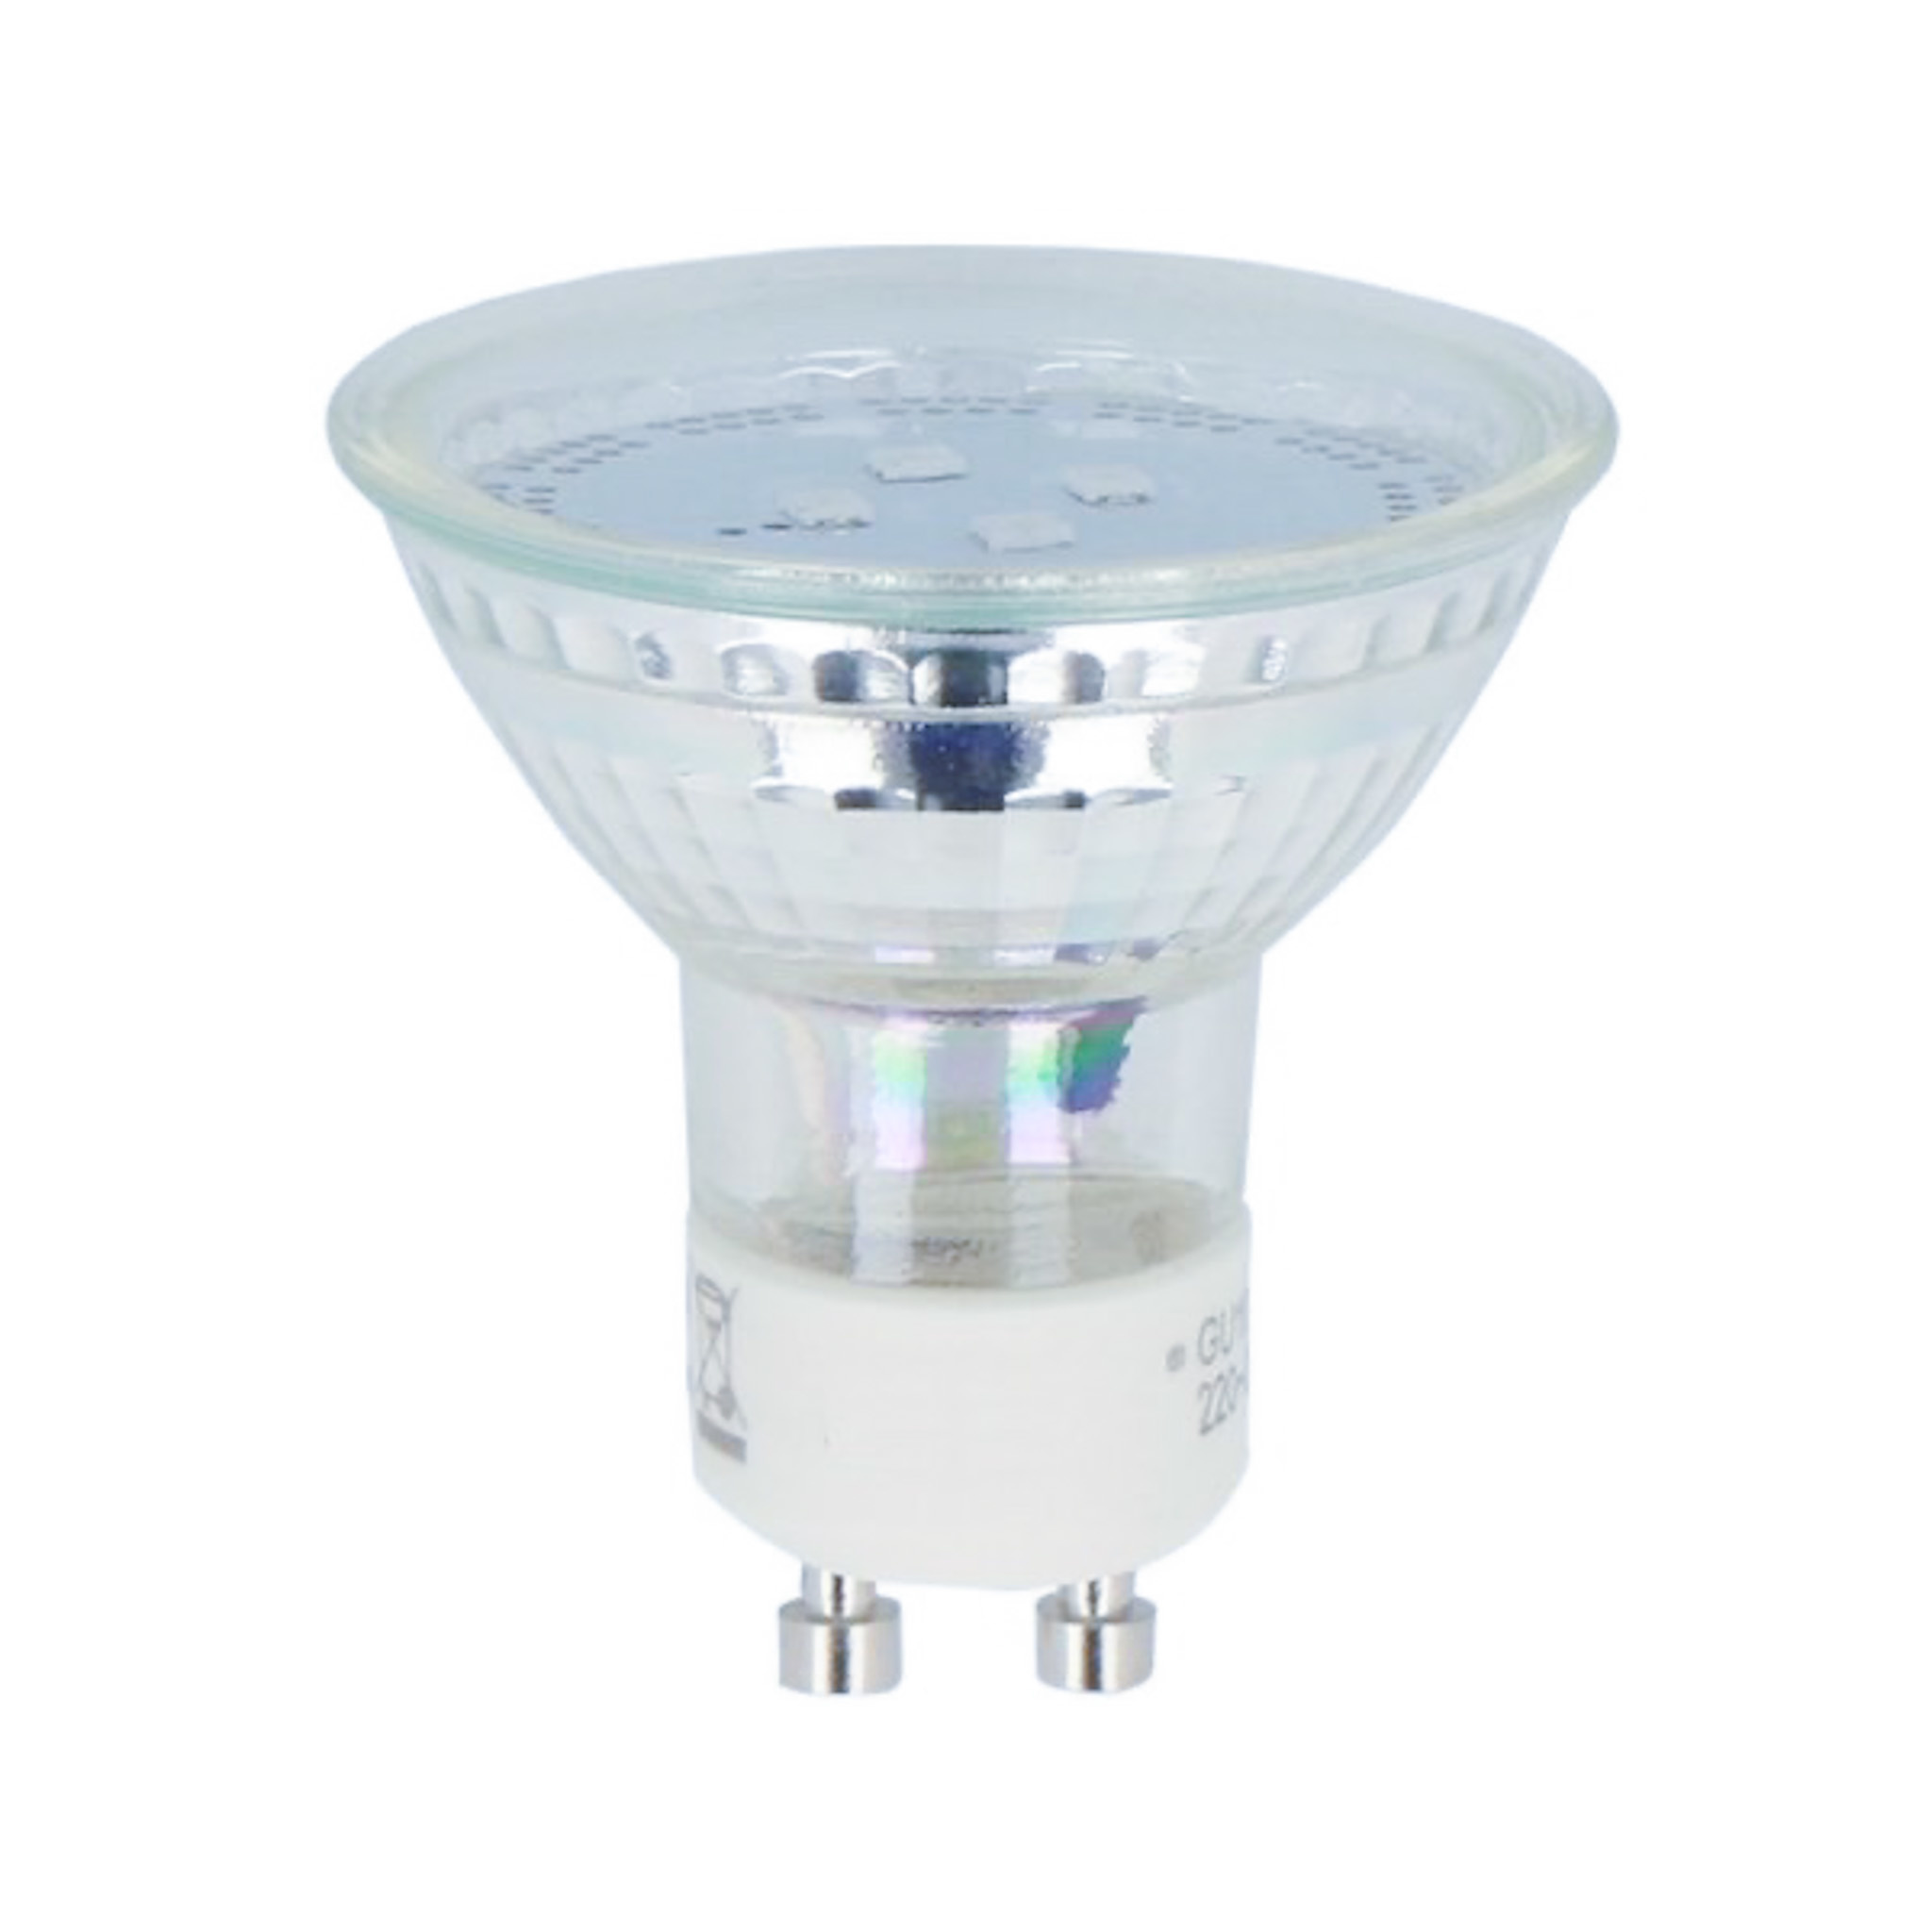 fast synder fodspor LED Spot GU10 - 1W - 4000K naturligt hvidt lys - erstatter 10W - I glas -  Ledpaneler.dk